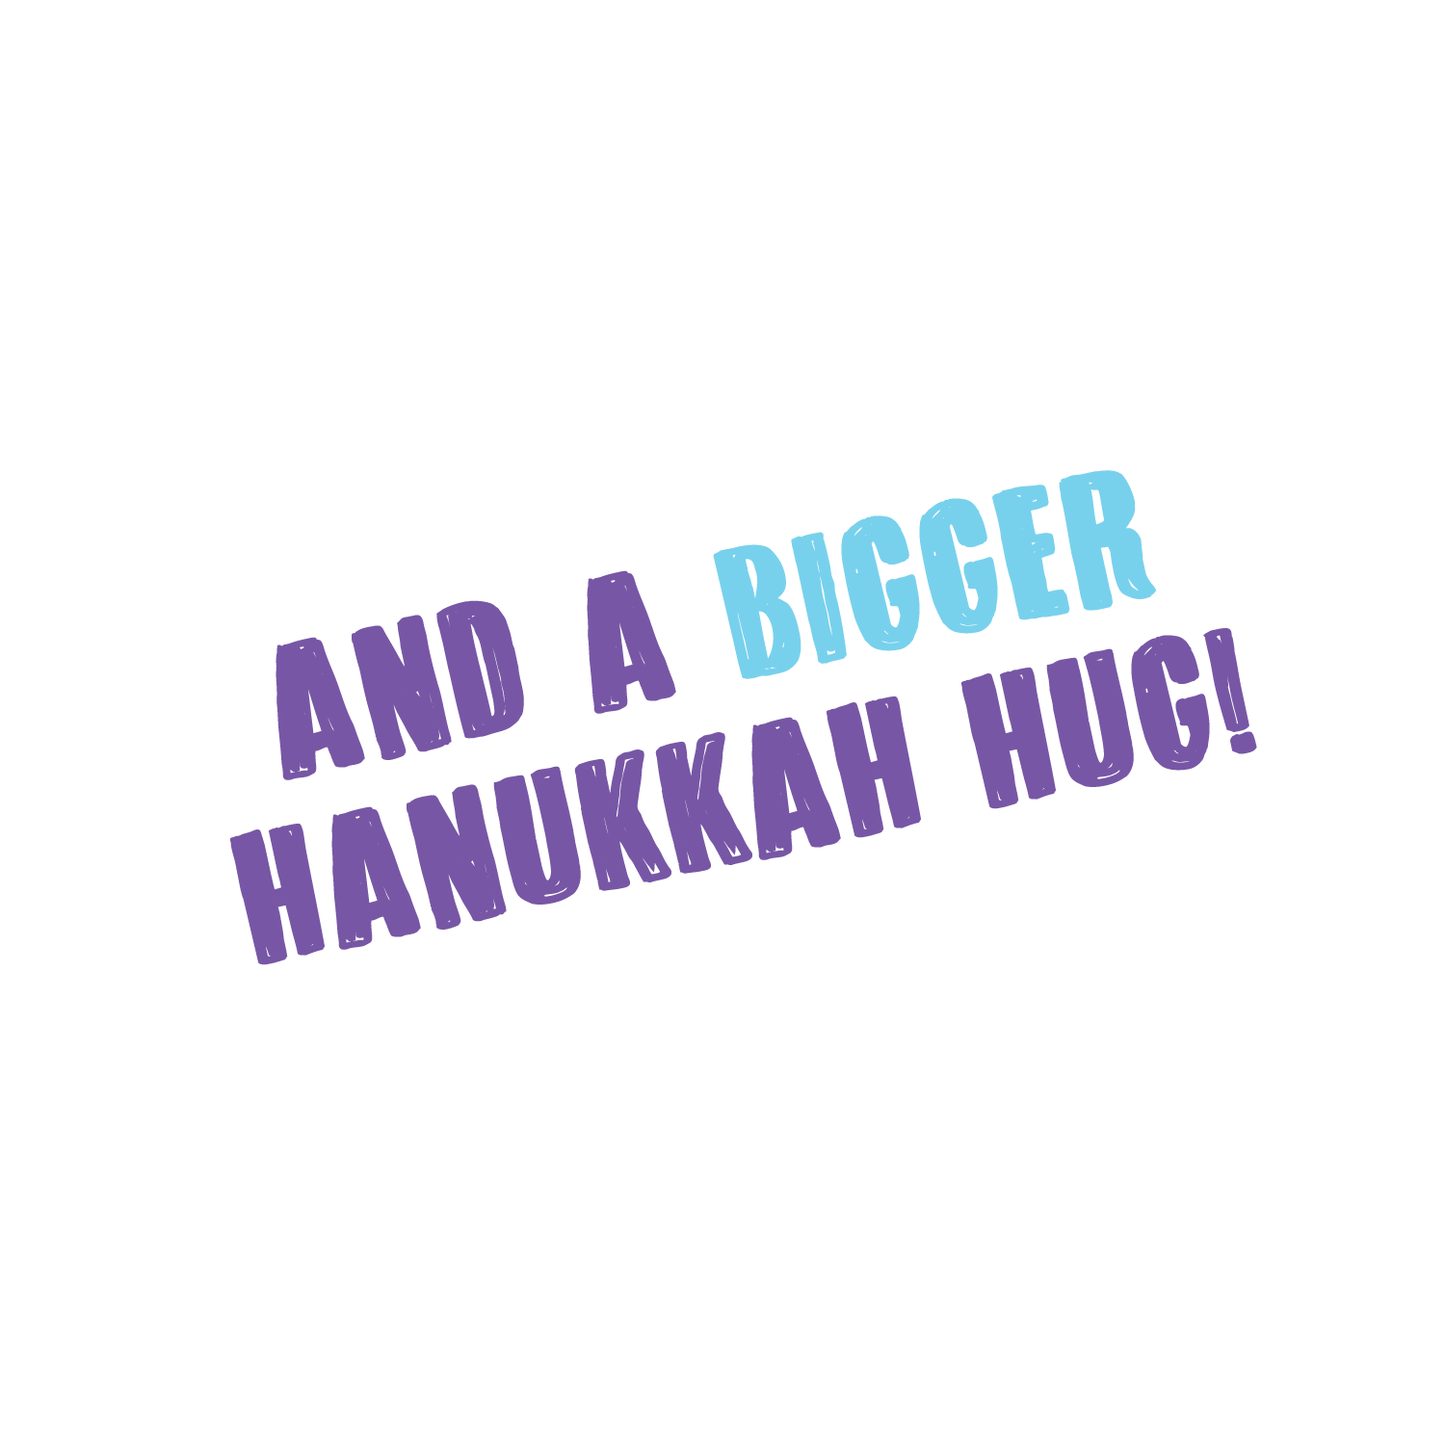 Big Dreidel Energy - Funny  Hanukkah Card - Menschions Funny Jewish Cards